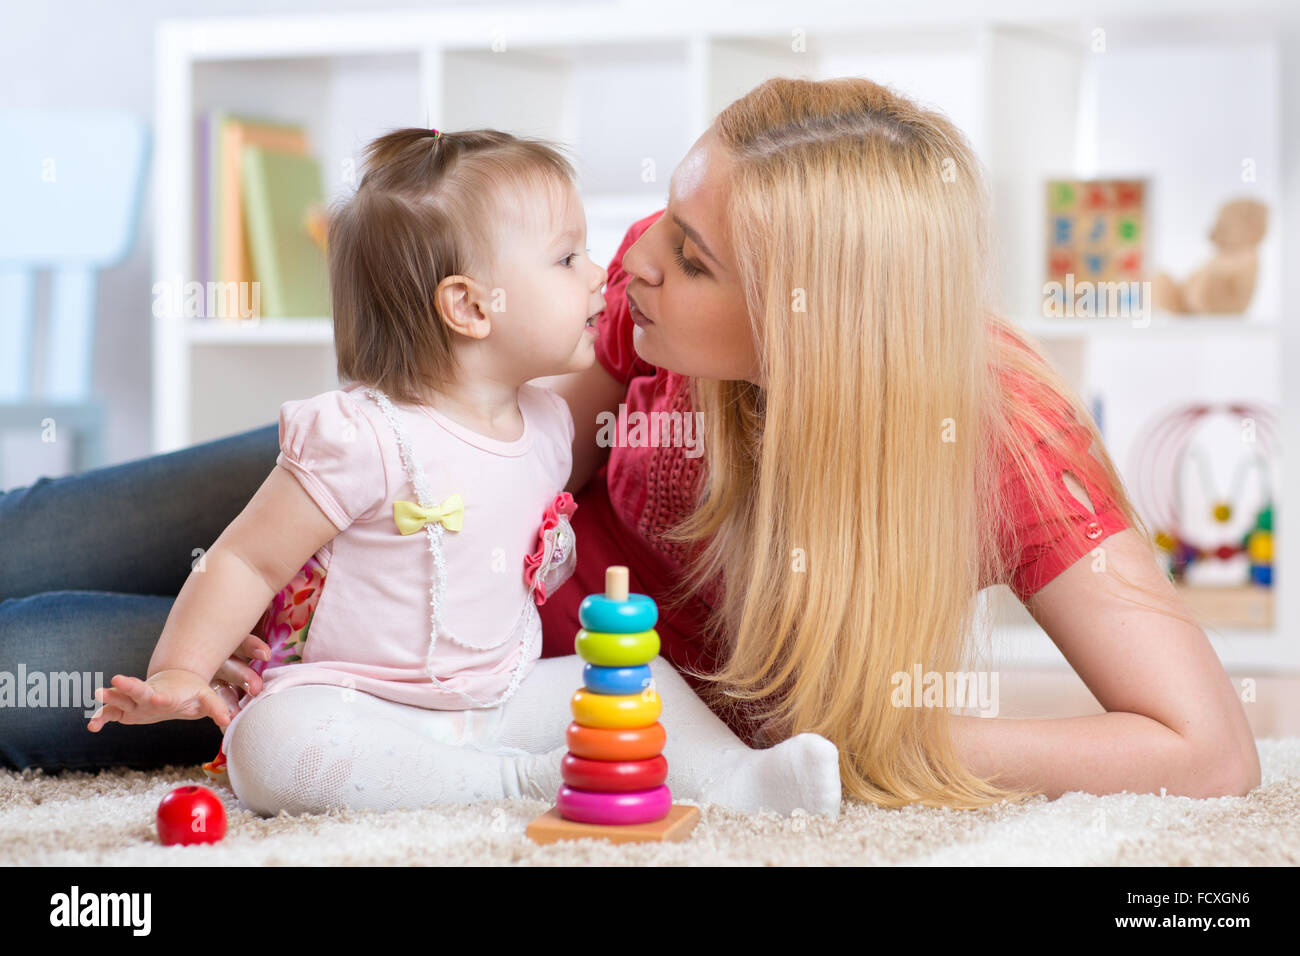 Madre e hija adentro jugando y sonriendo Foto de stock